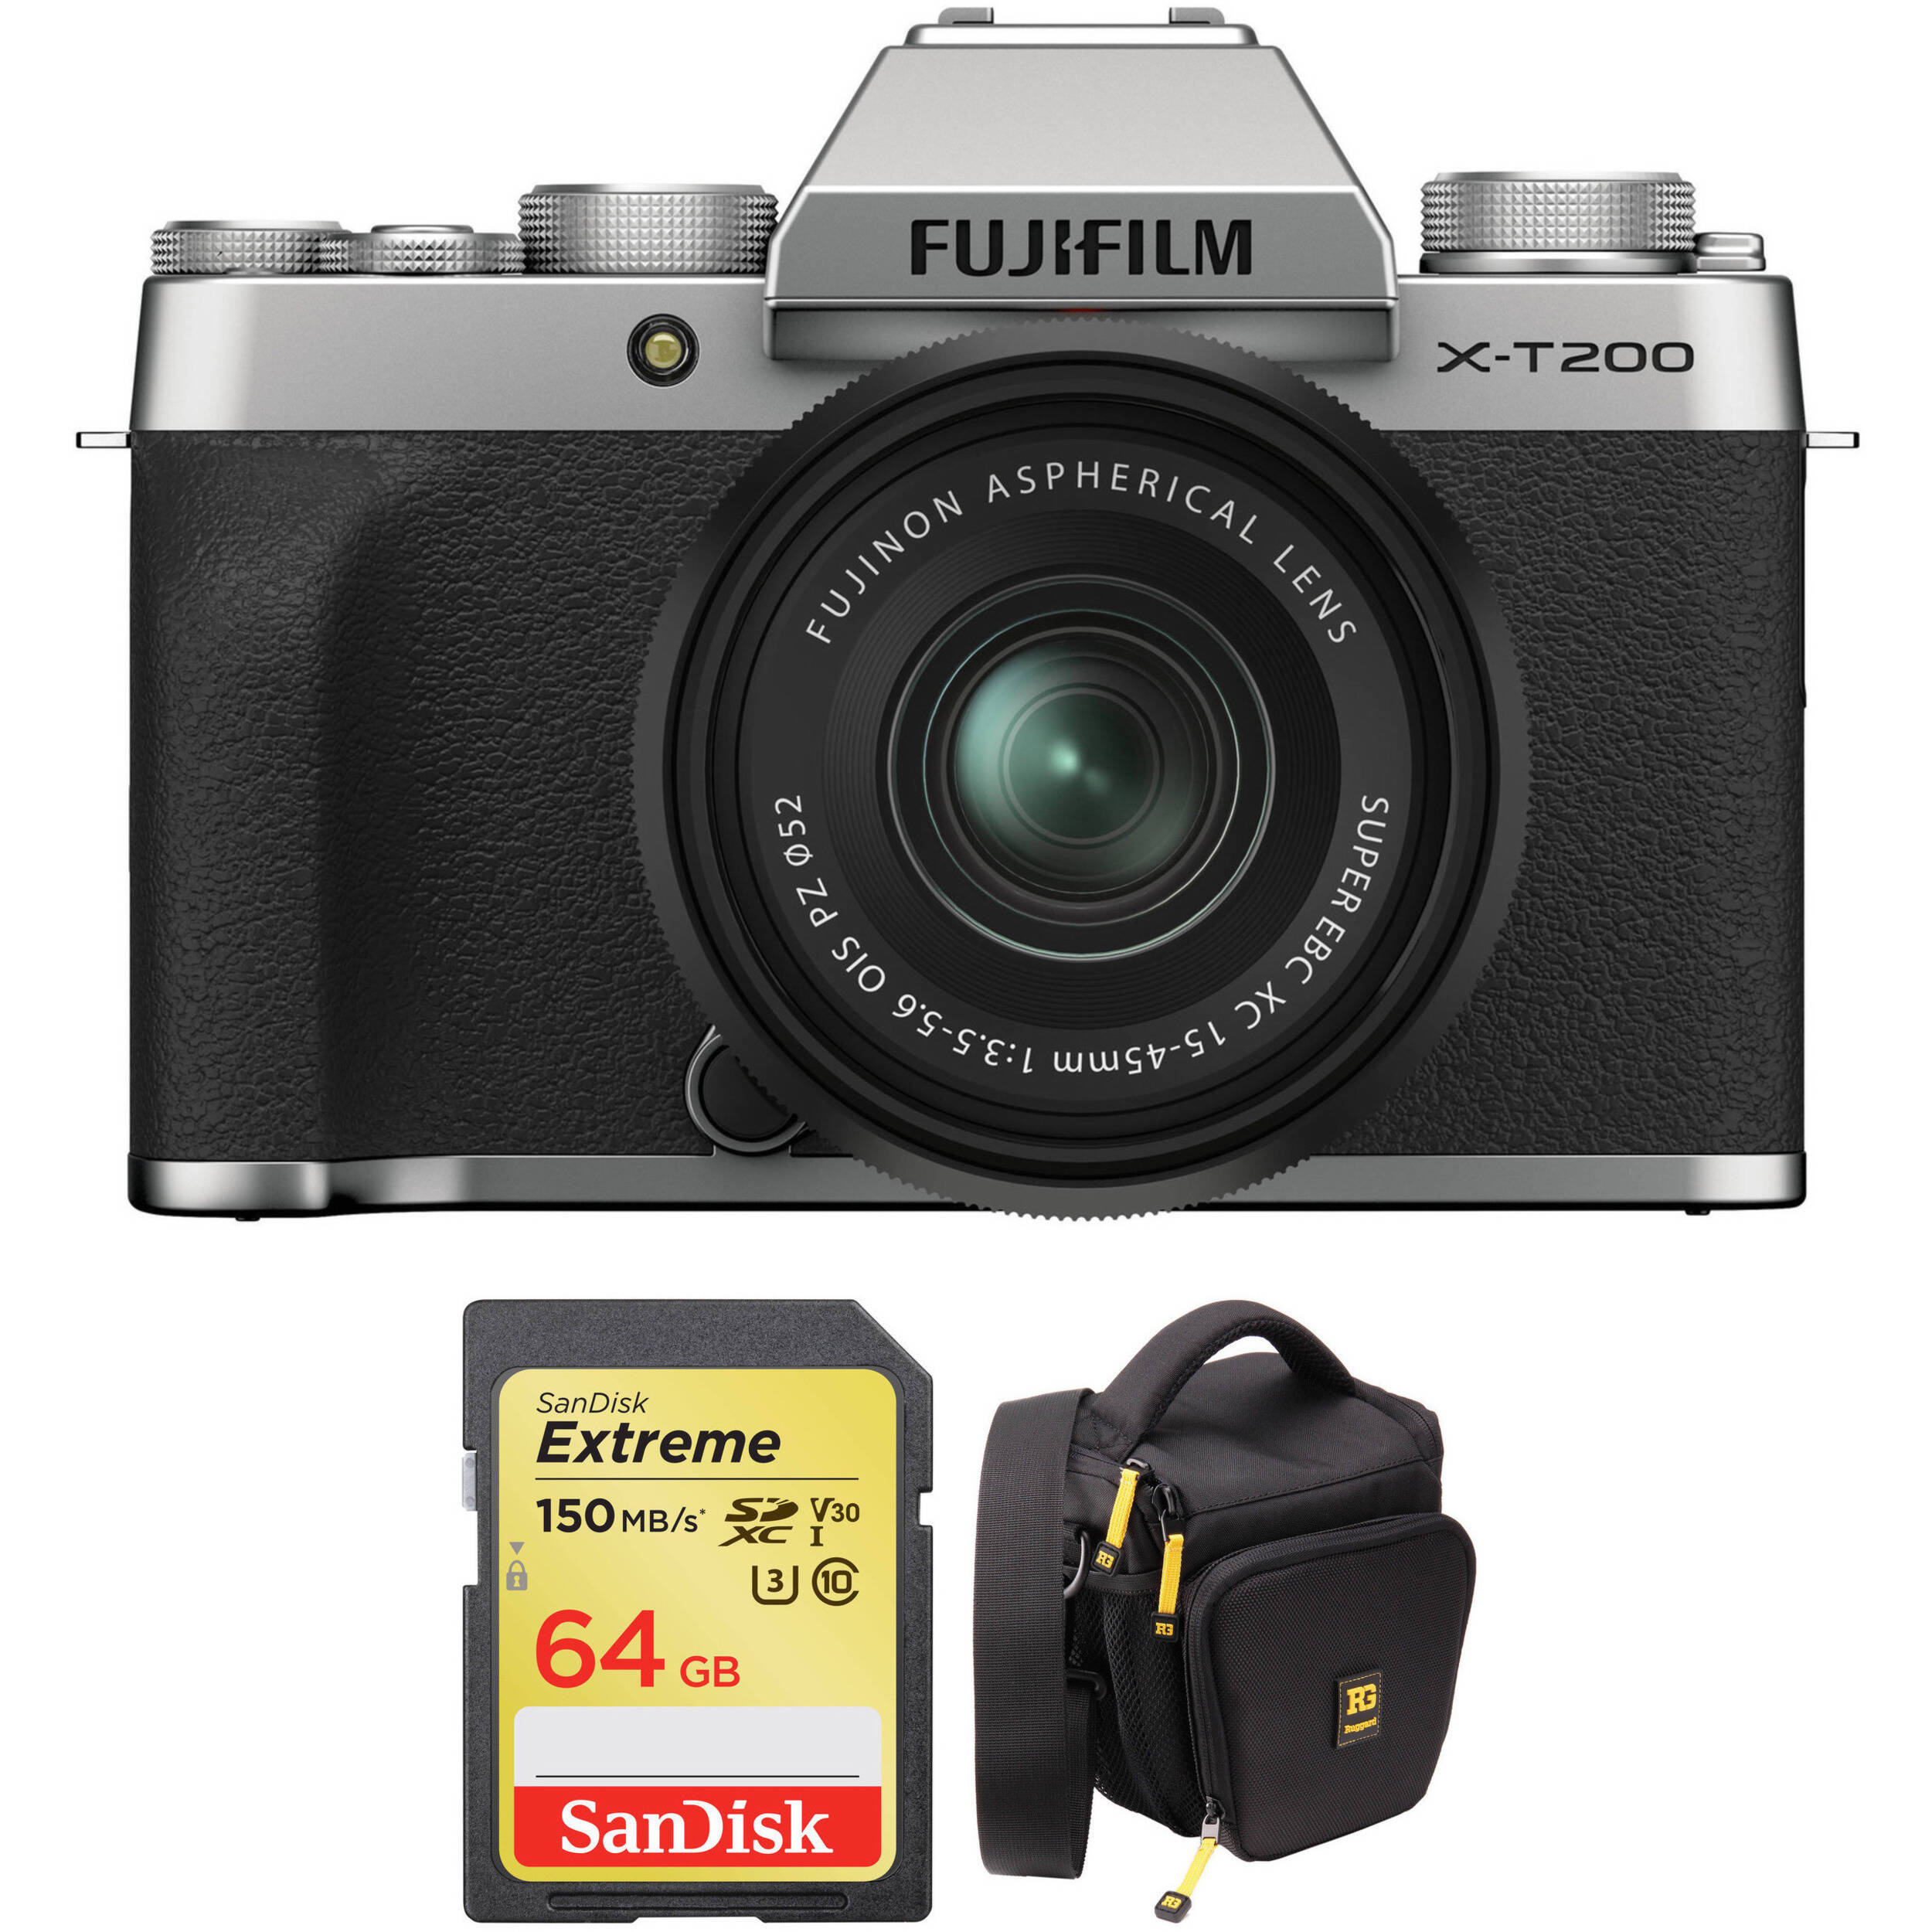 FUJIFILM XT200 Mirrorless Digital Camera with 1545mm